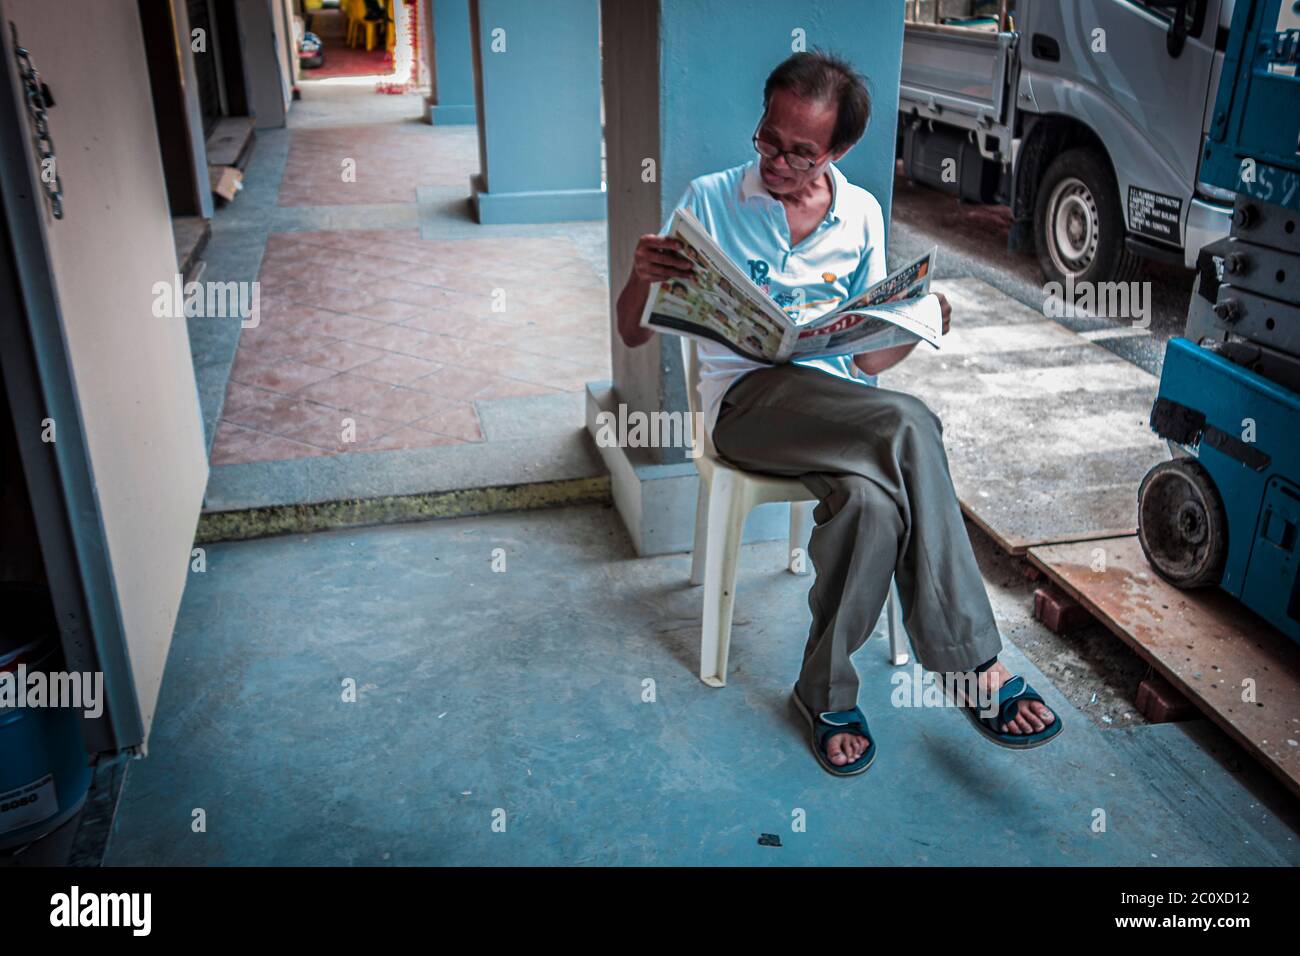 Scène de rue d'un homme lisant un journal assis sur une chaise en plastique. Buffalo Road. Petite Inde. Singapour Banque D'Images